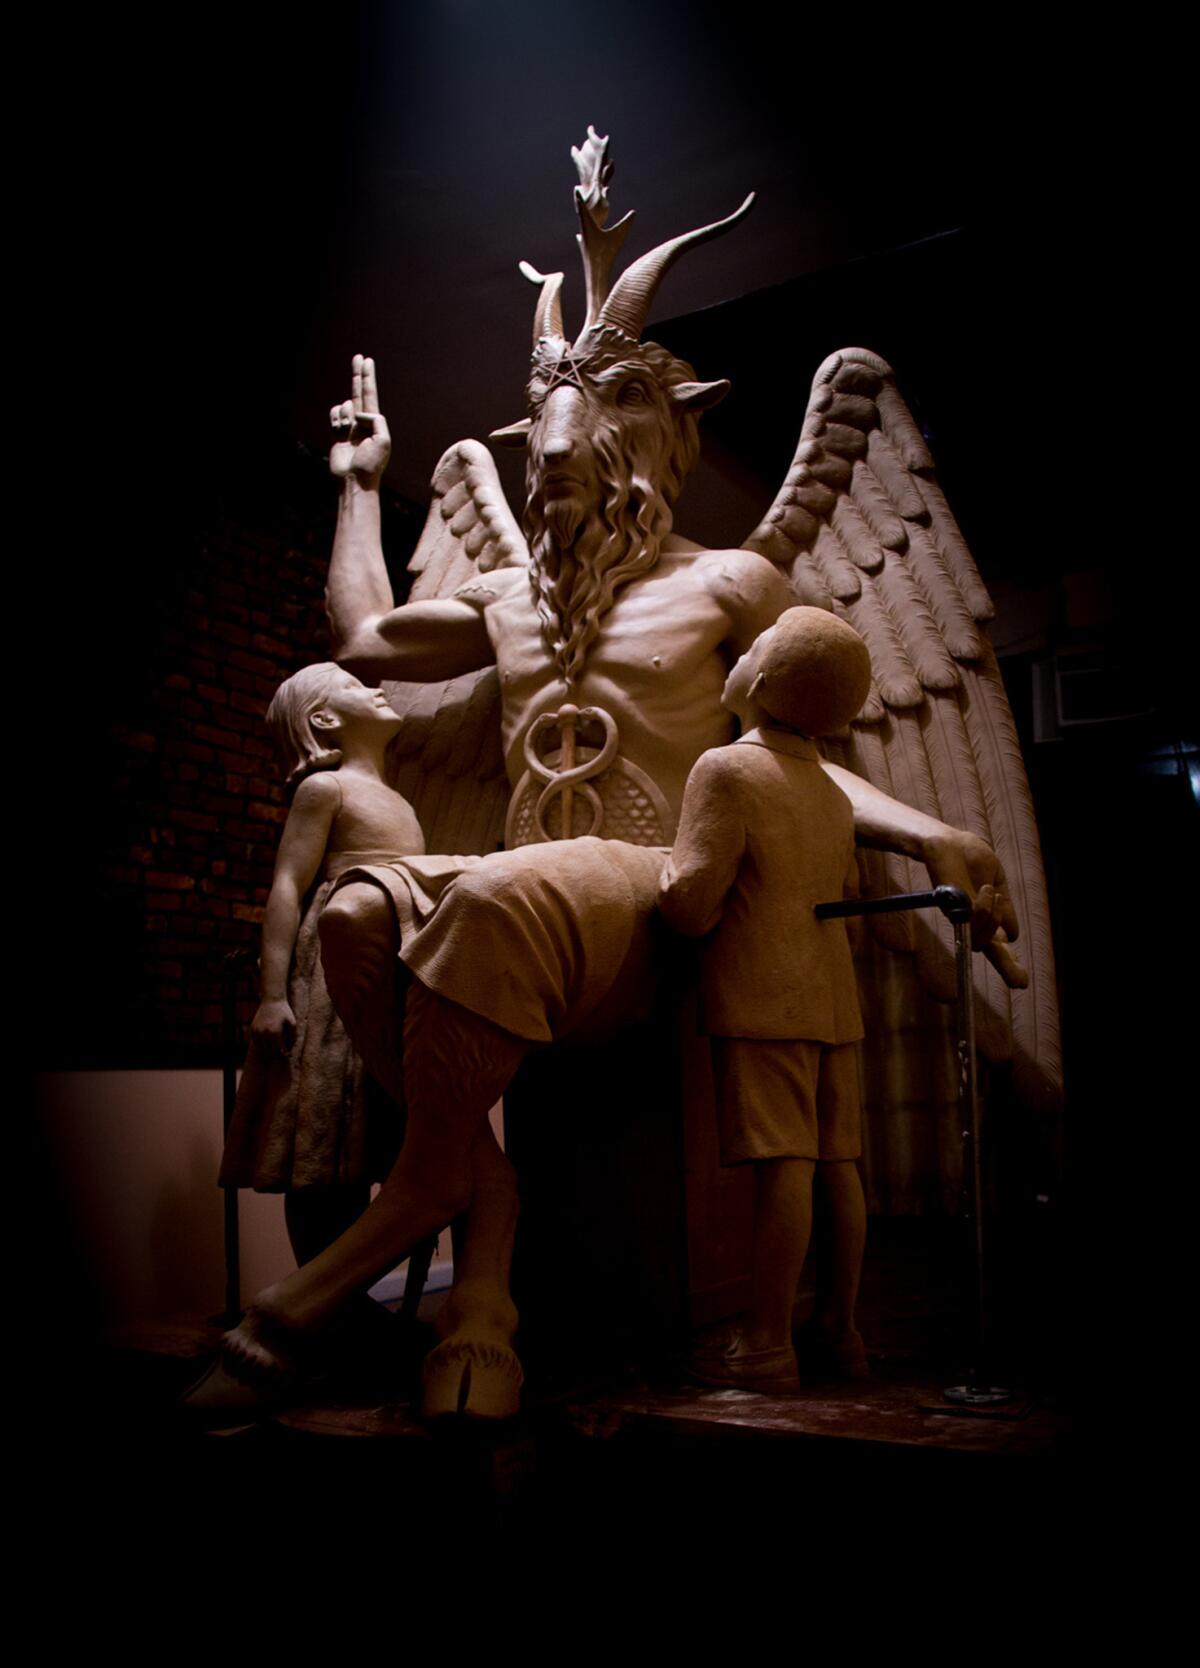 Una estatua de bronce de Satán con cabeza de cabra, alas y cascos en lugar de pies fue develada en un evento privado en Detroit, según el dueño de la pieza, el grupo El Templo Satánico. La estatua mide 2,59 metros (8,5 pies) de alto y pesa tonelada y media.